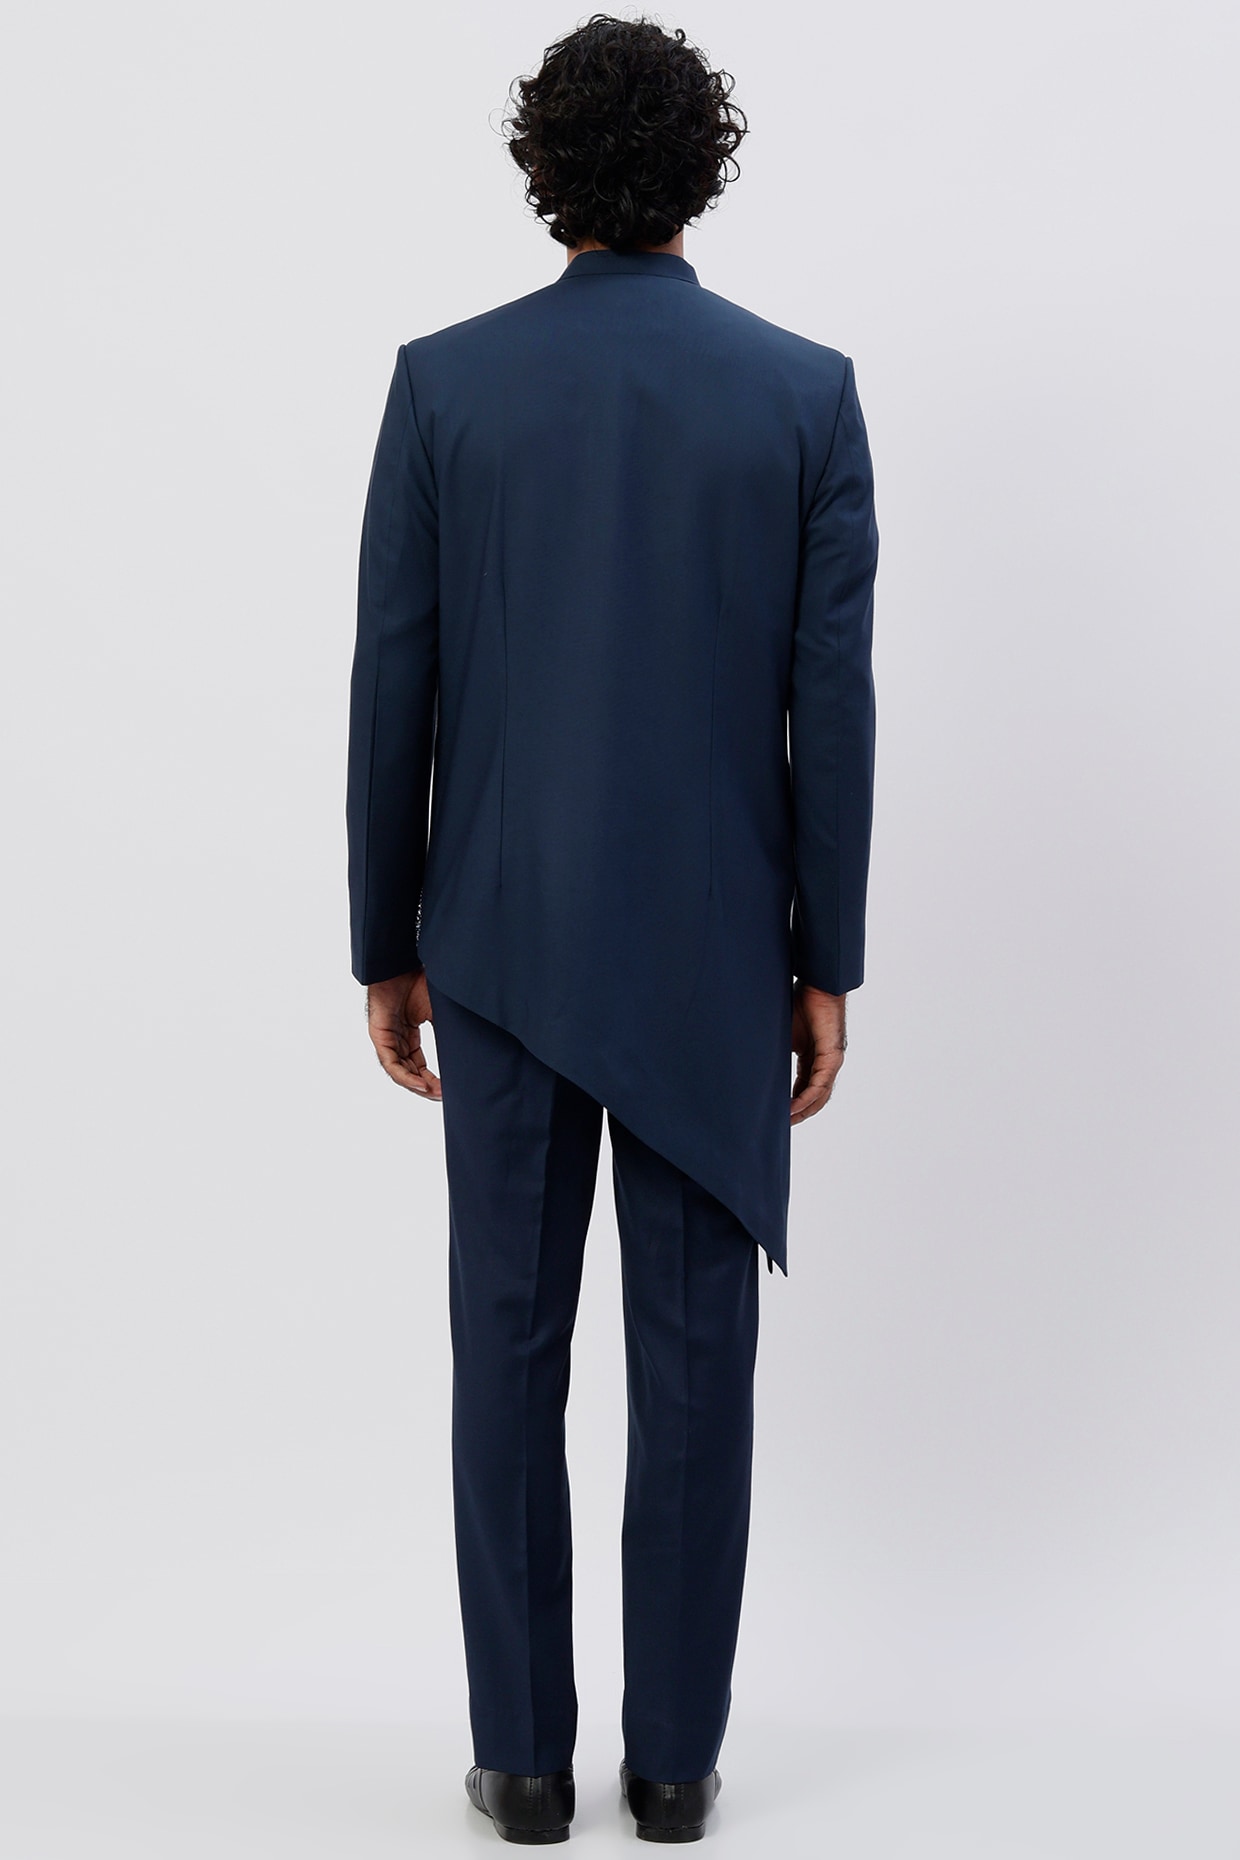 Black fully embroidered prince coat design | Prince coat, Formal attire for  men, Coat design